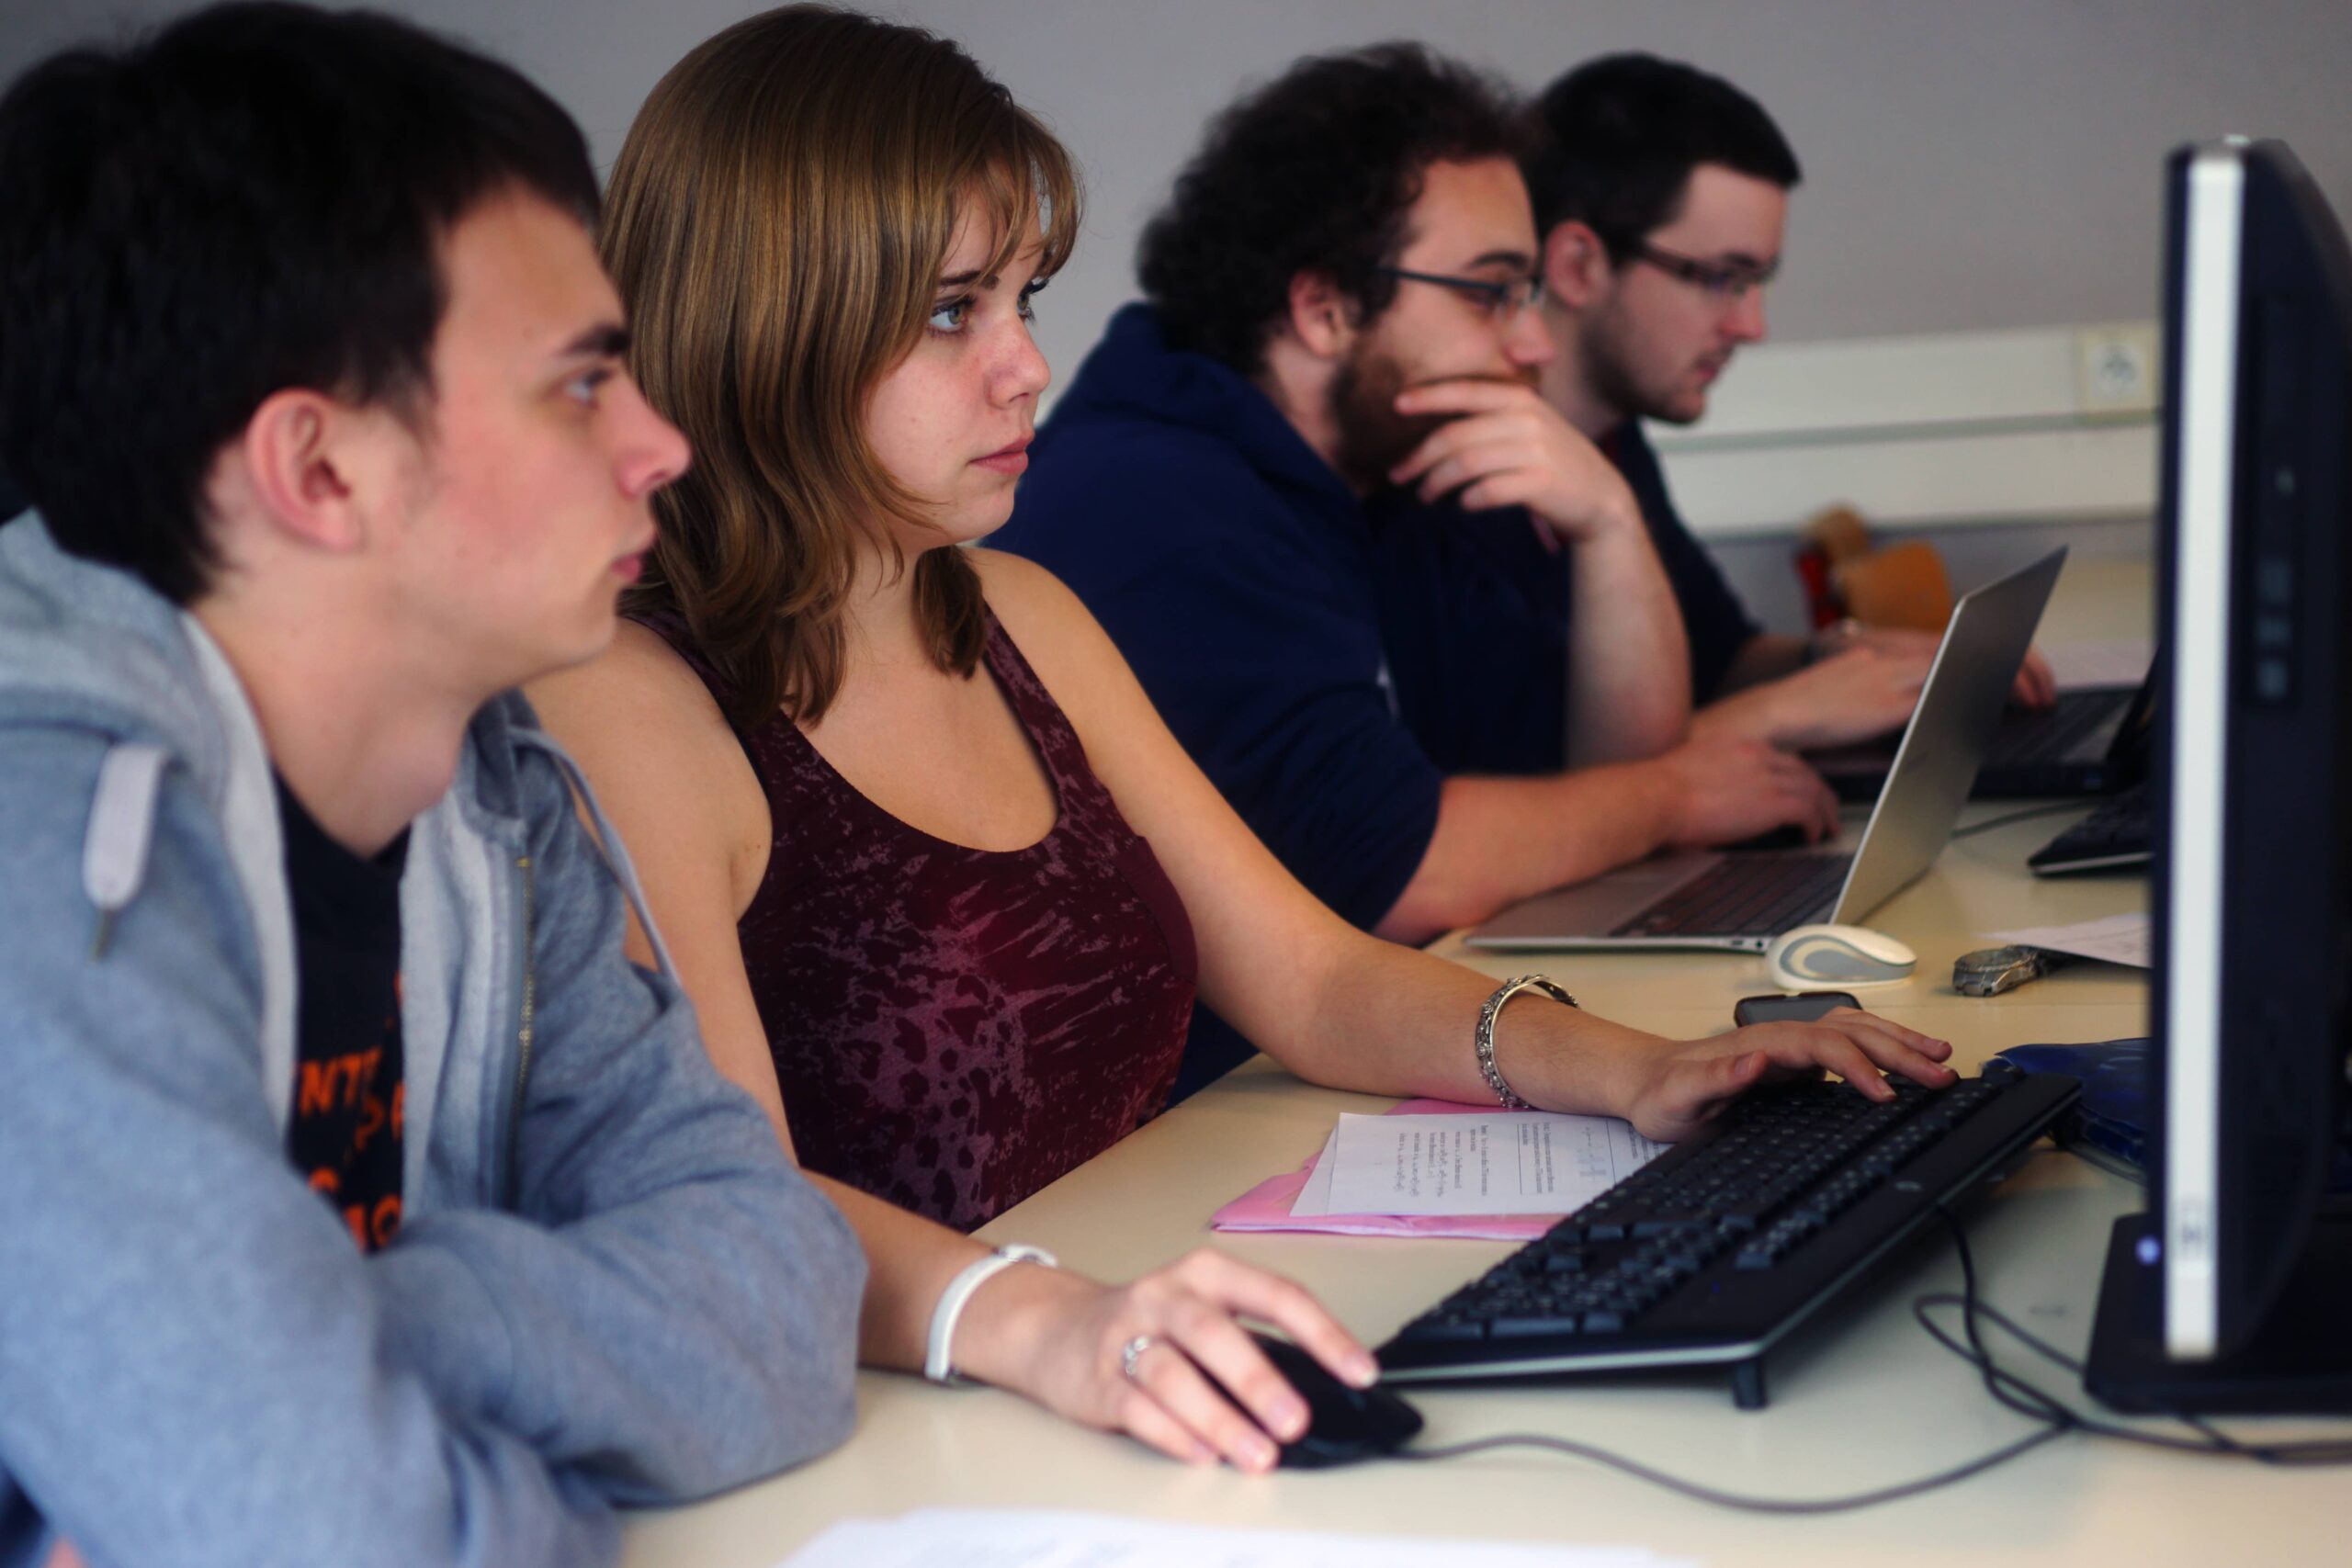 Etudiants de l'ESIR travaillant en cours d'informatique